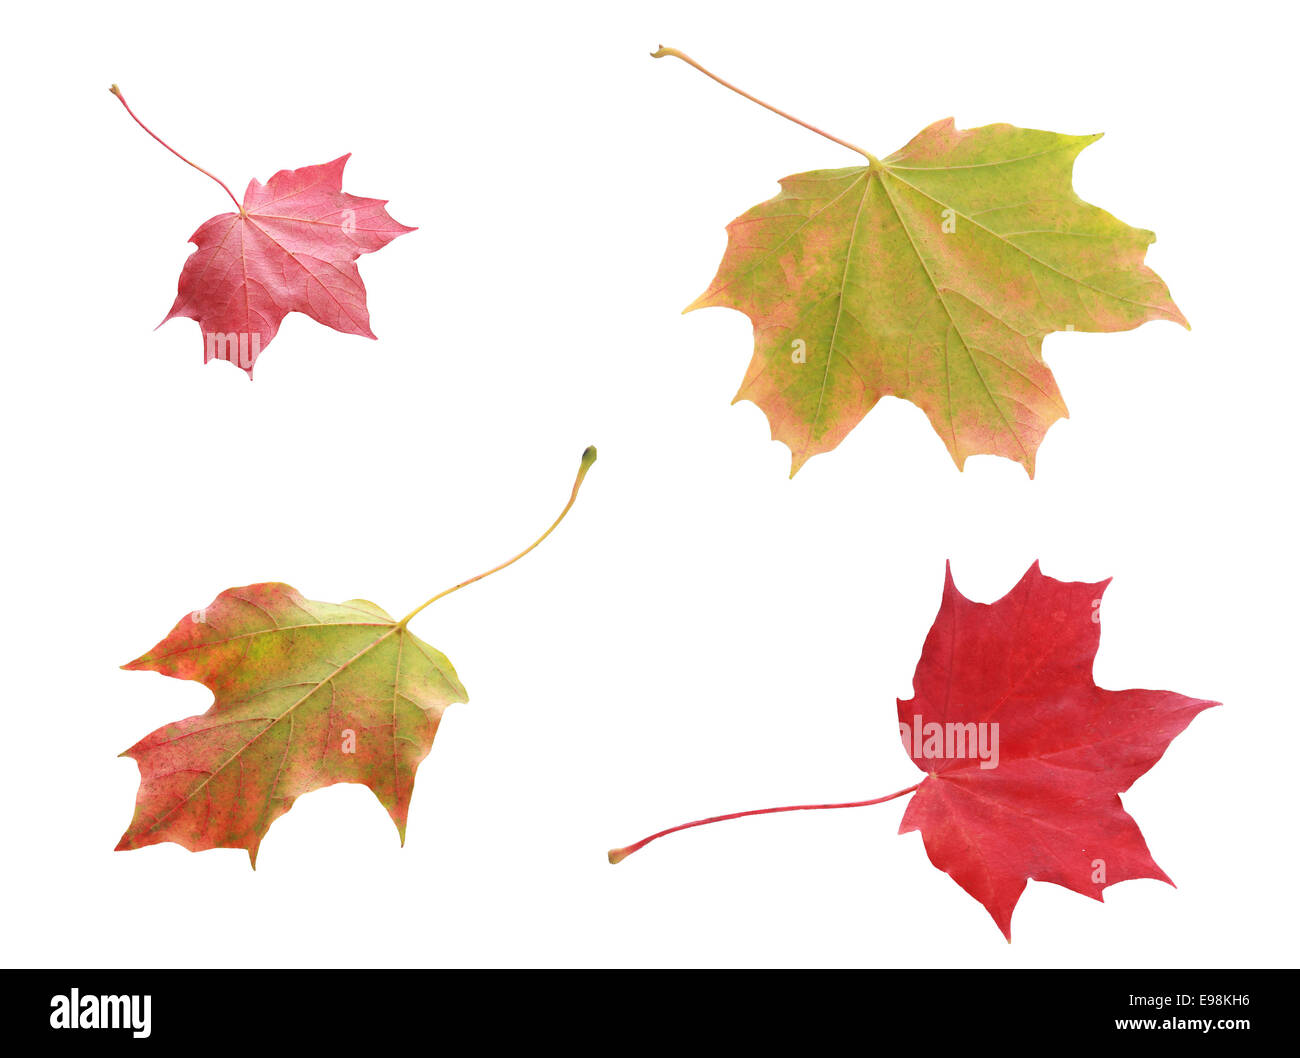 L'automne les feuilles panachées coloré quatre vues de dessus et ci-dessous dans les tons de rouge et vert indiquant le changement de couleurs avec le changement de saison, isolated on white Banque D'Images